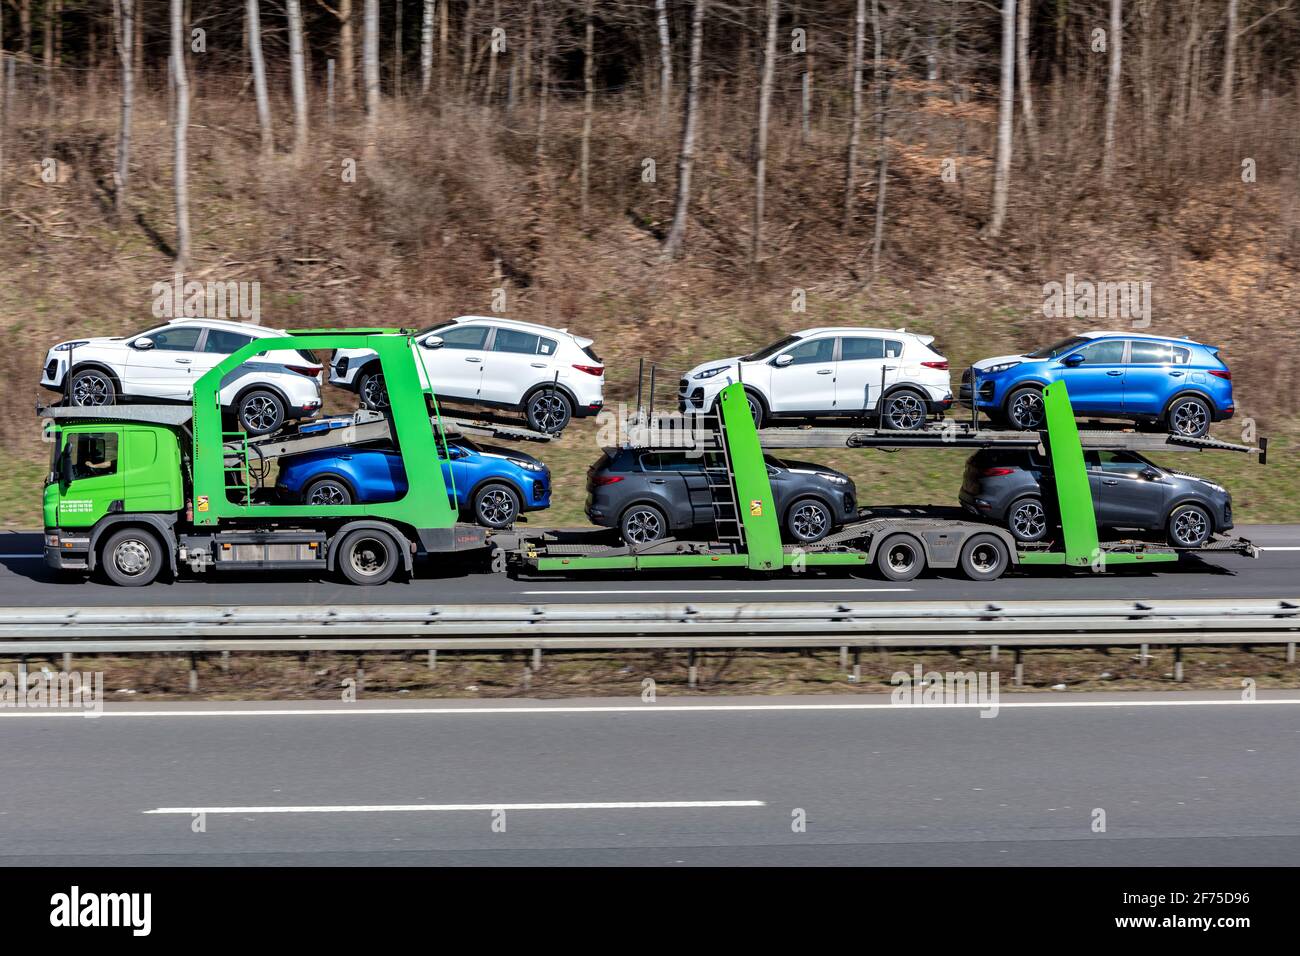 Adampol Scania autocarro per il trasporto di automobili caricato con nuove vetture Kia Sportage in autostrada. Foto Stock